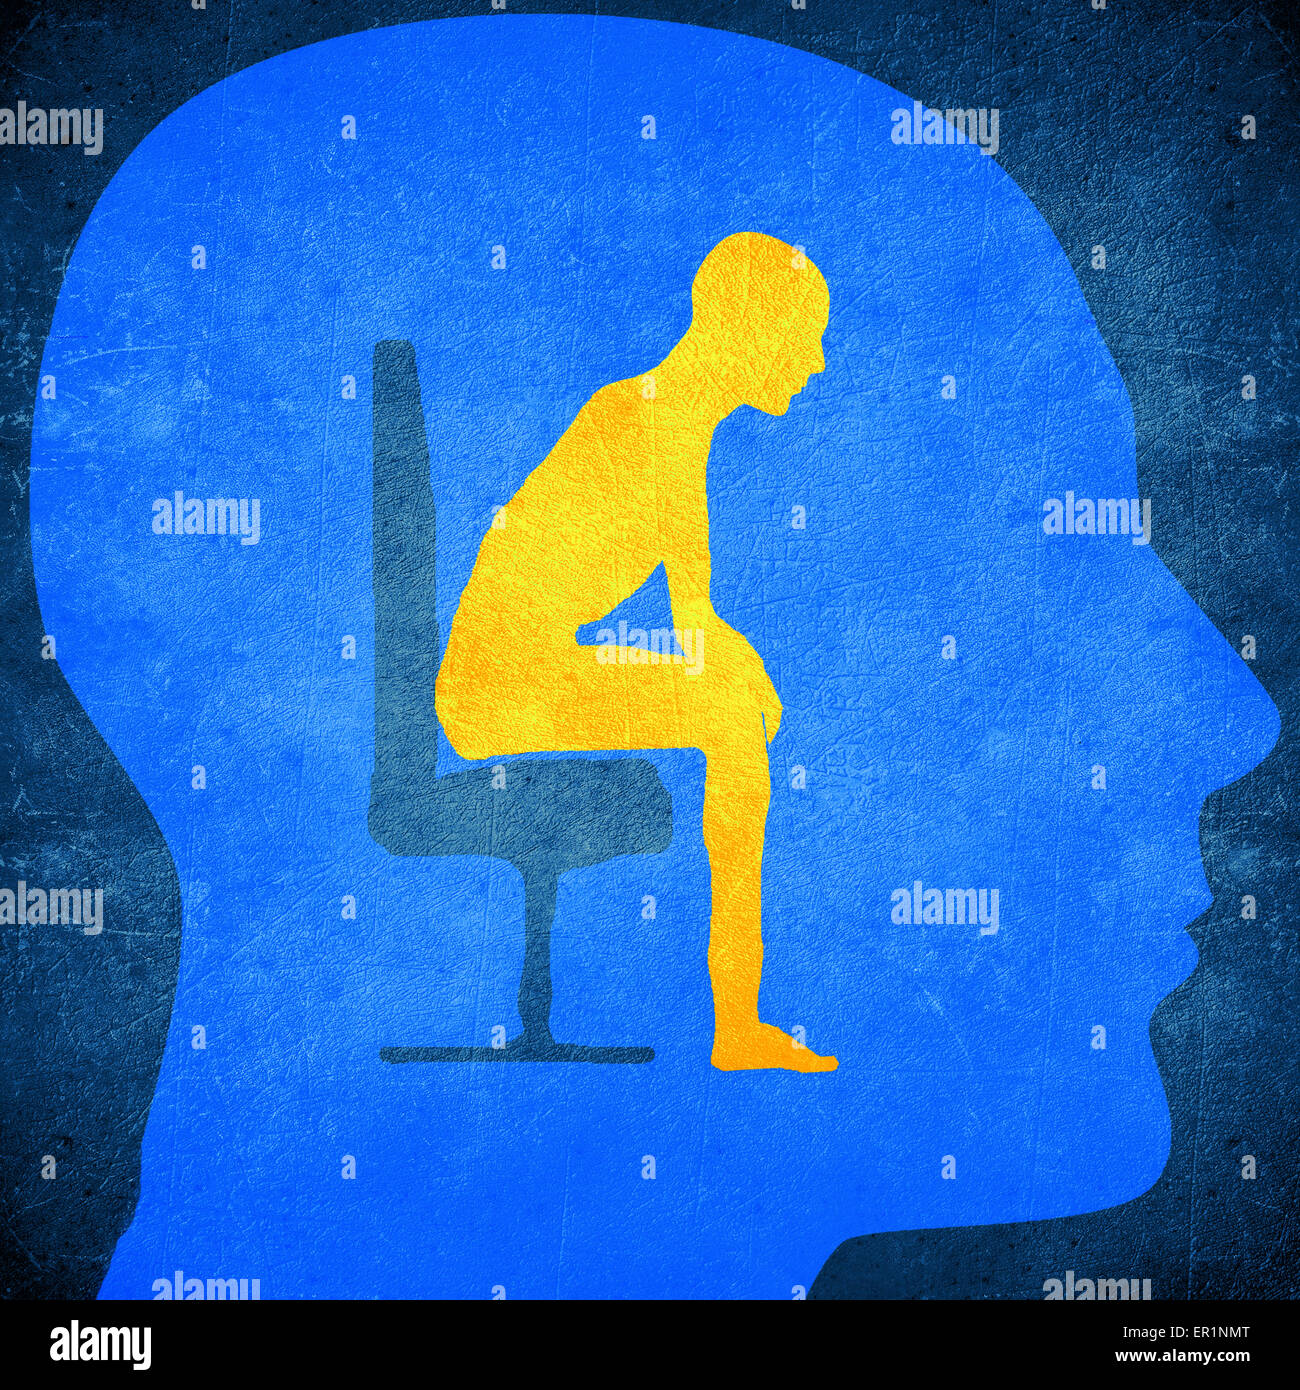 Tête humaine bleu silhouette avec un homme assis à l'intérieur concept psychologie Banque D'Images